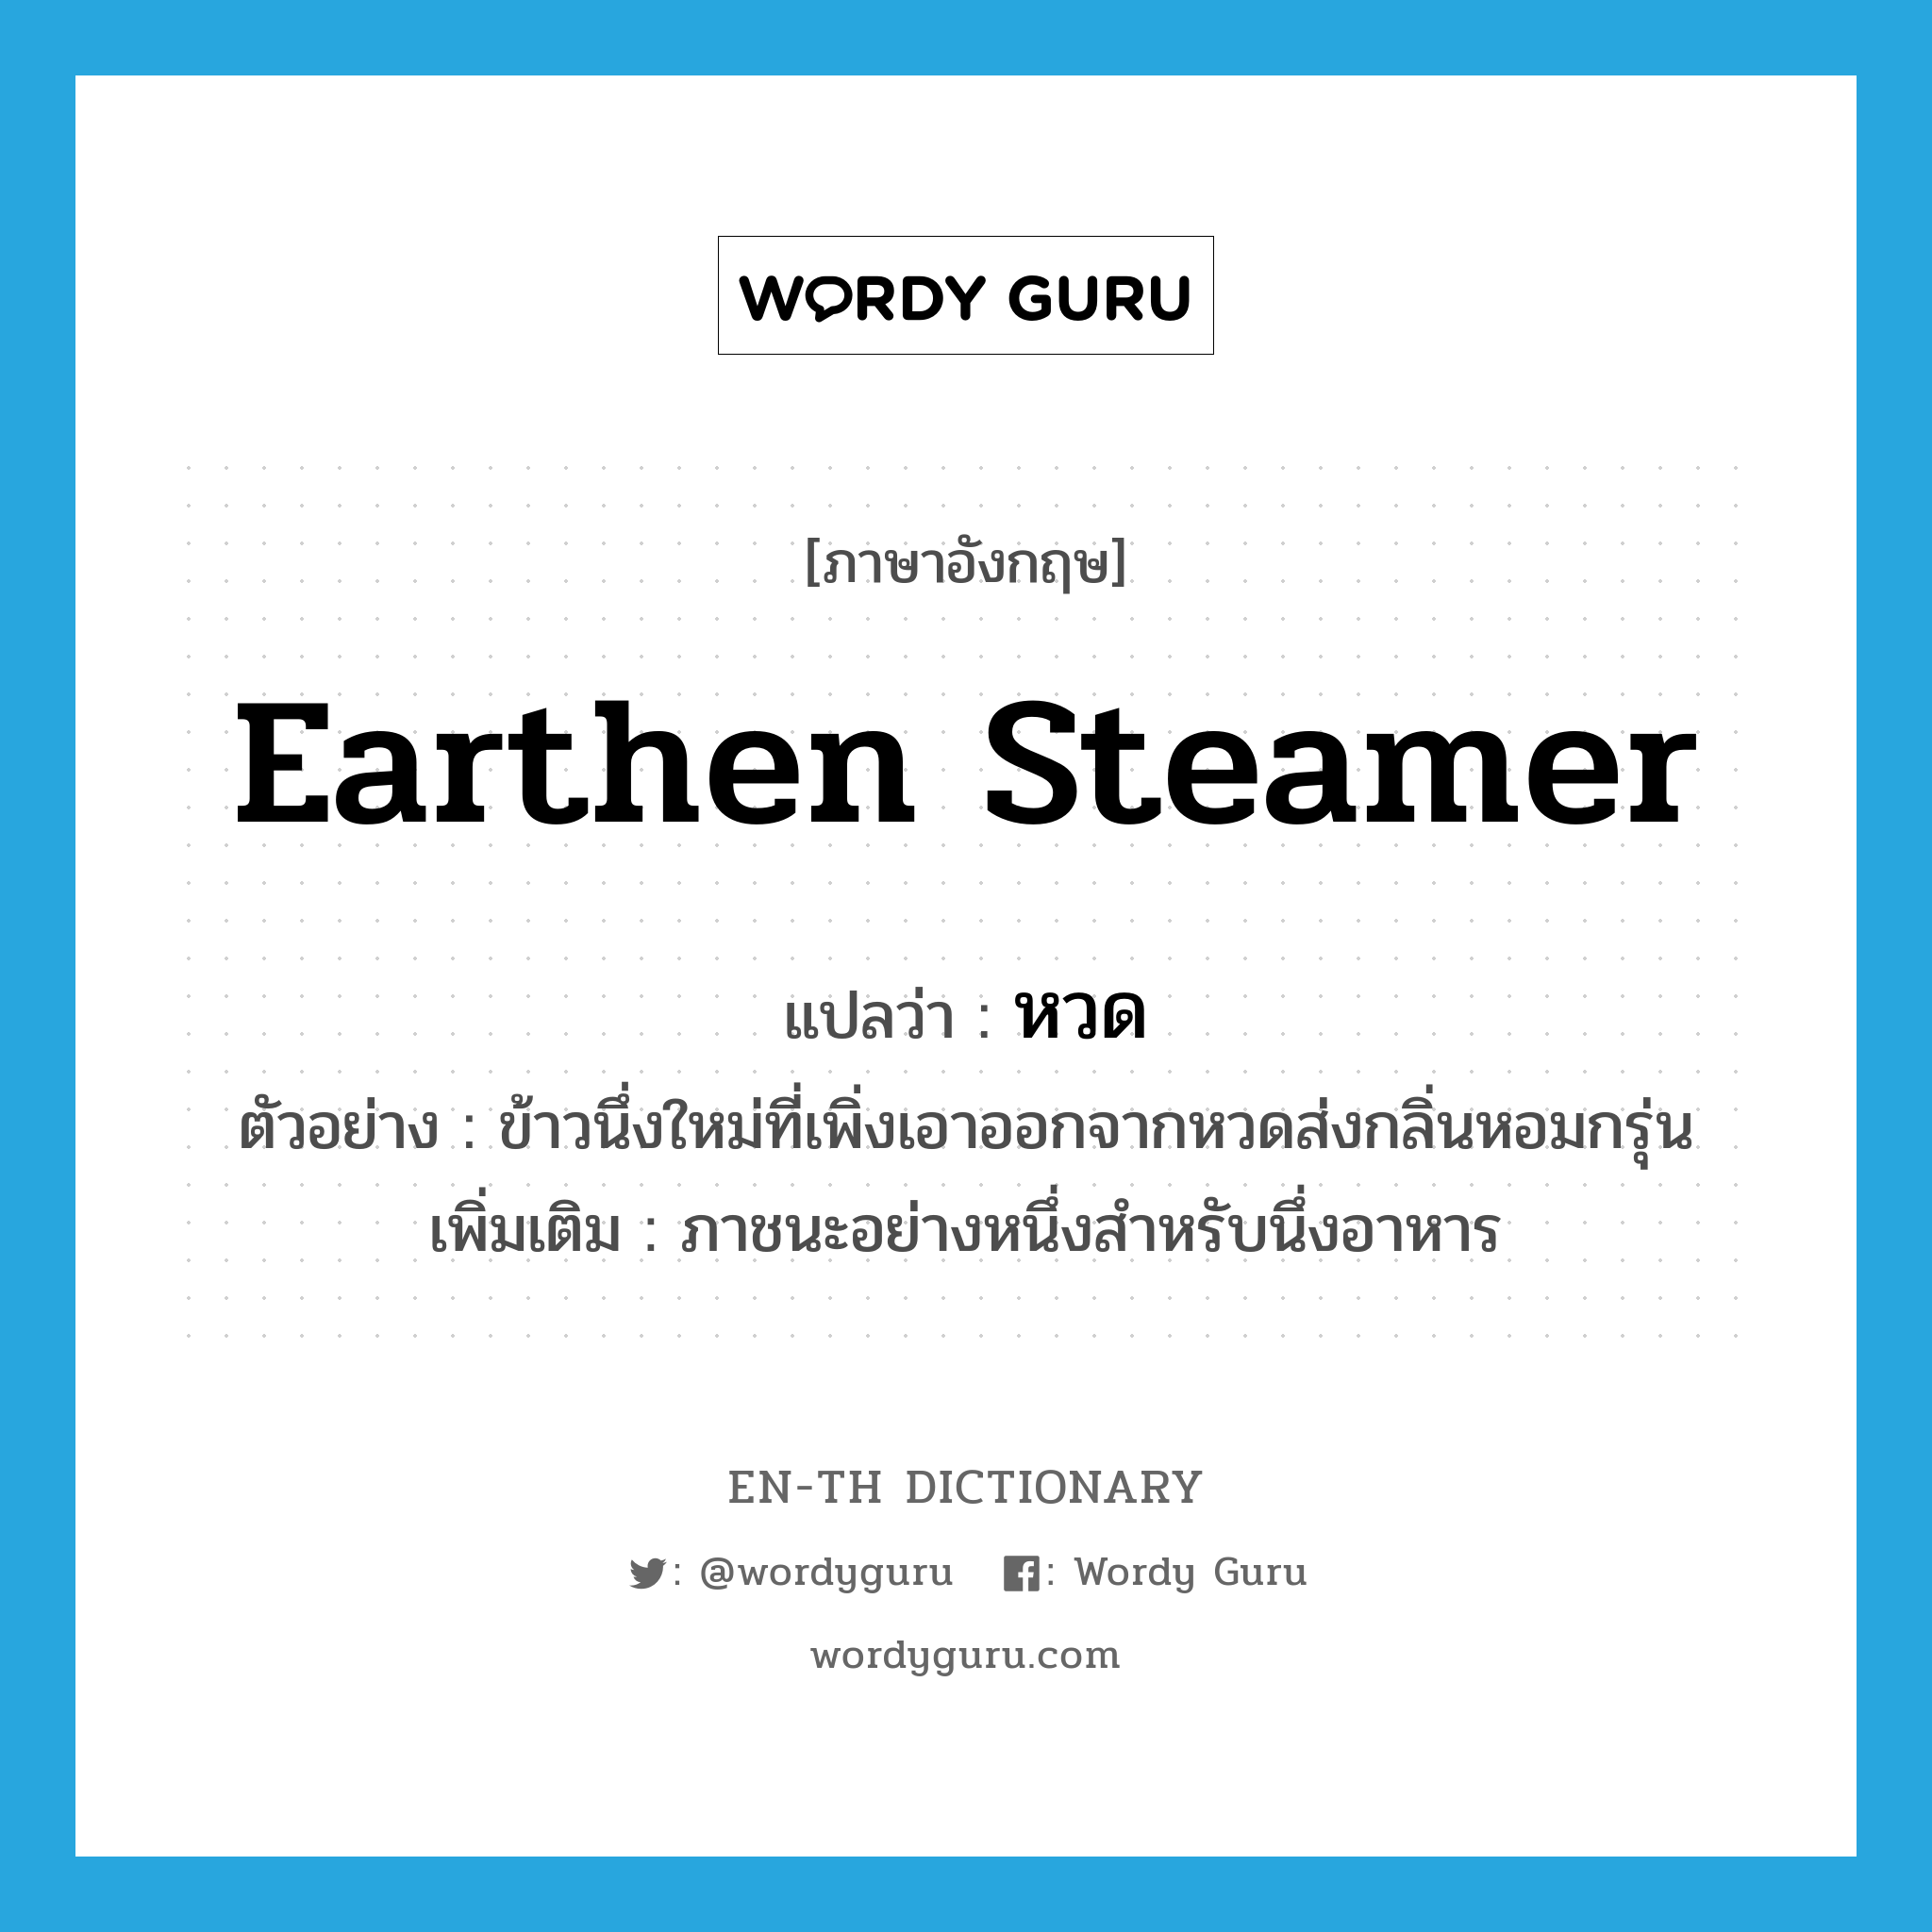 earthen steamer แปลว่า?, คำศัพท์ภาษาอังกฤษ earthen steamer แปลว่า หวด ประเภท N ตัวอย่าง ข้าวนึ่งใหม่ที่เพิ่งเอาออกจากหวดส่งกลิ่นหอมกรุ่น เพิ่มเติม ภาชนะอย่างหนึ่งสำหรับนึ่งอาหาร หมวด N